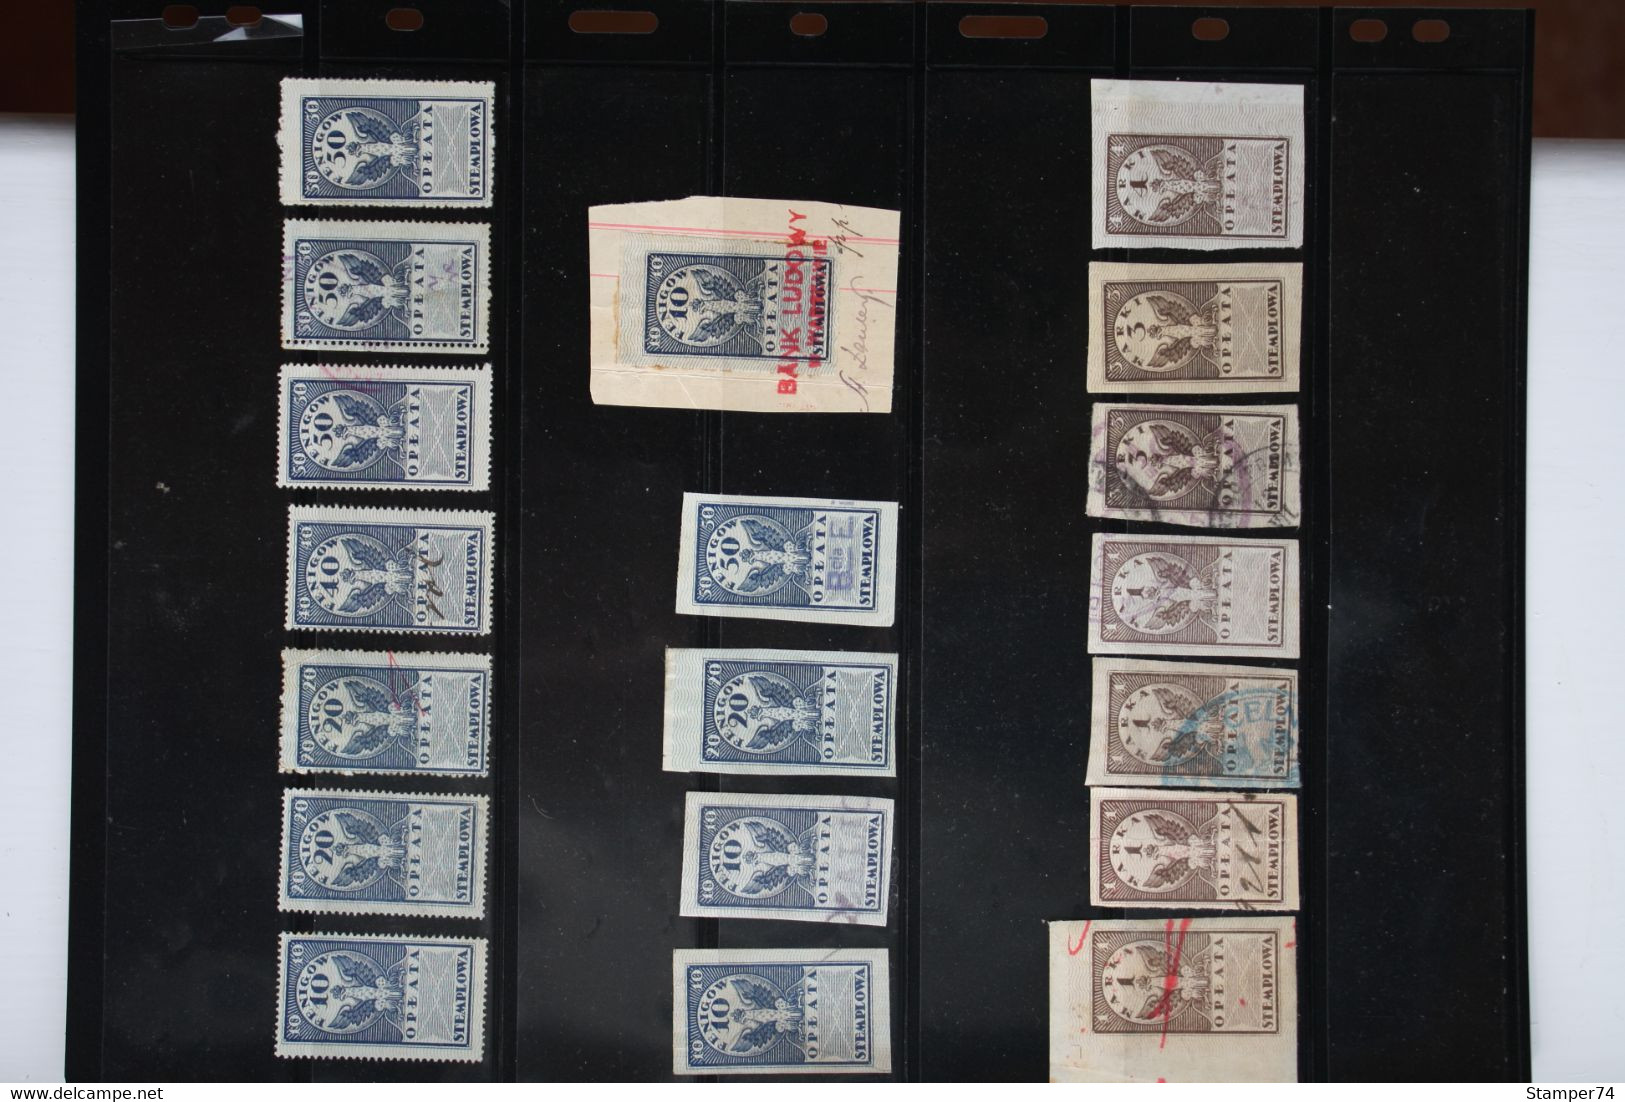 1920 Poland Revenue Stamps - Fiscaux